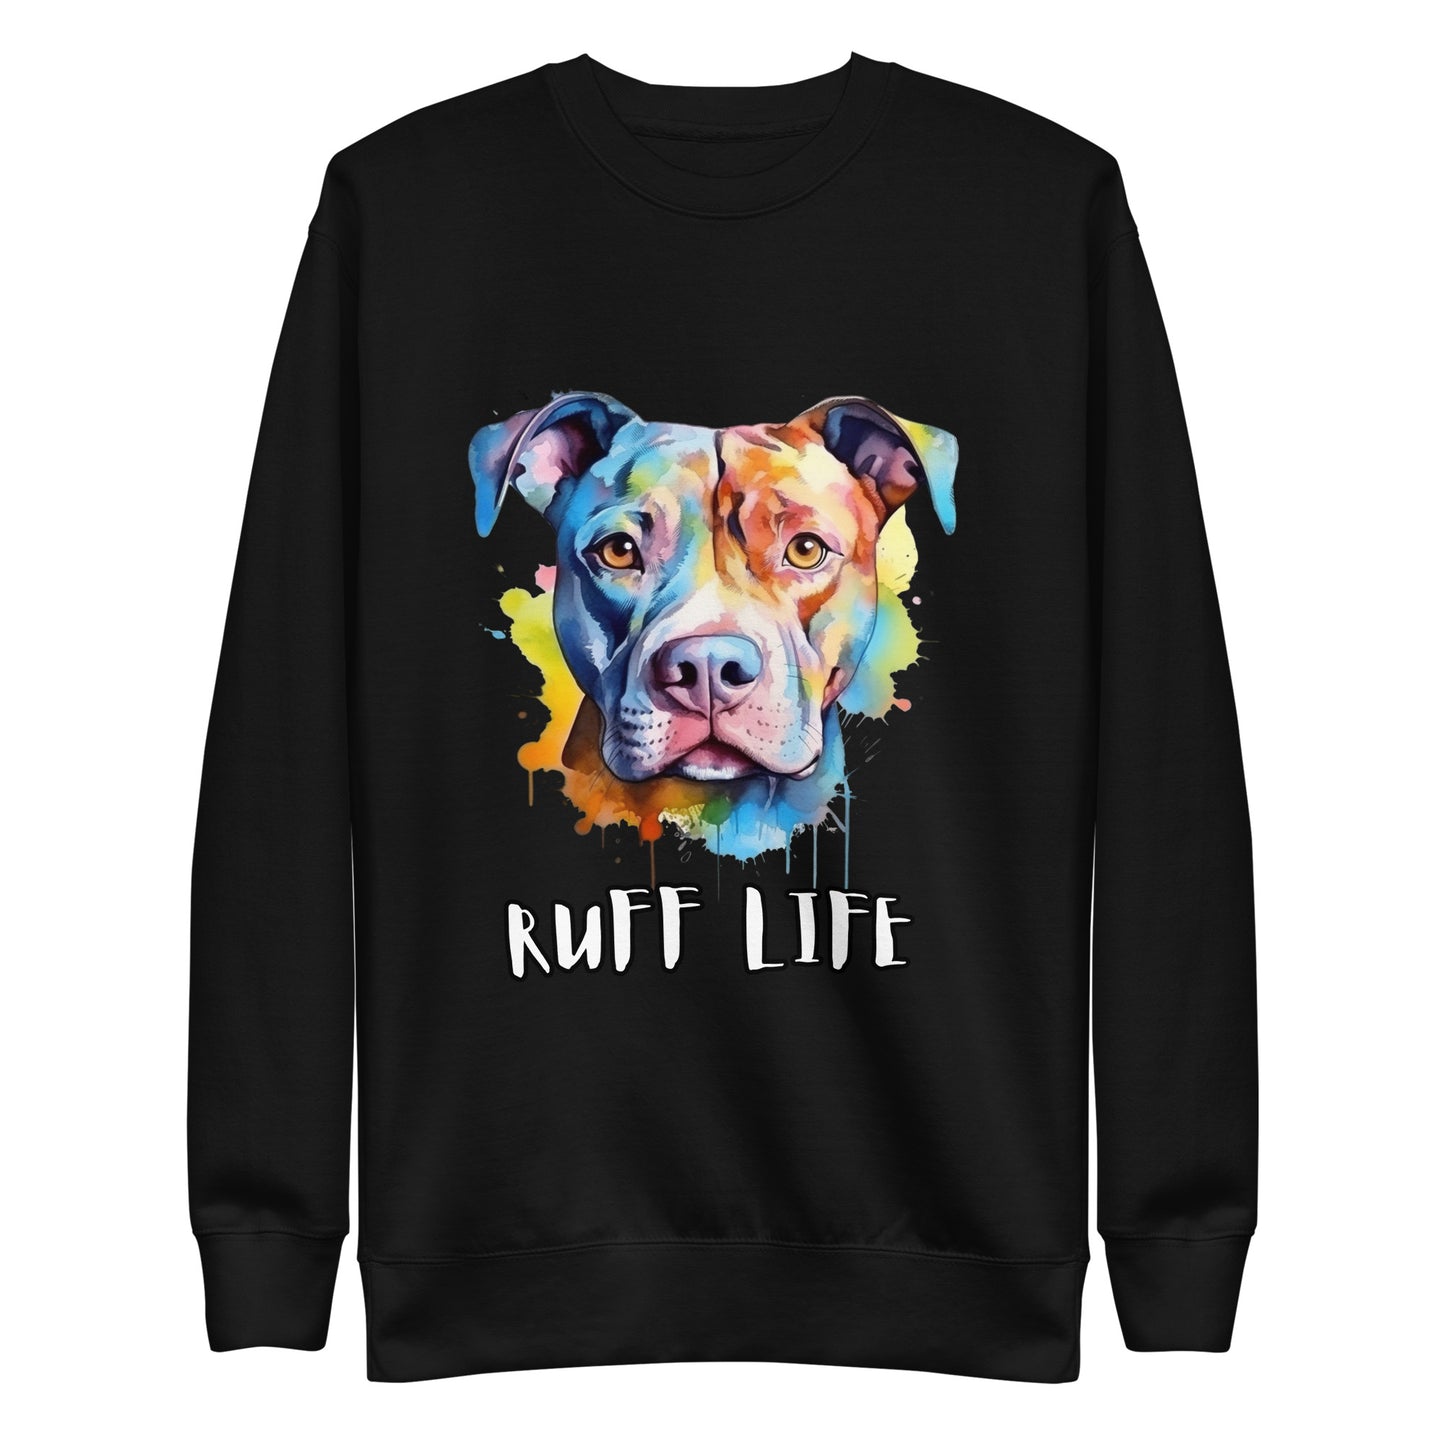 Ruff life Unisex Premium Sweatshirt